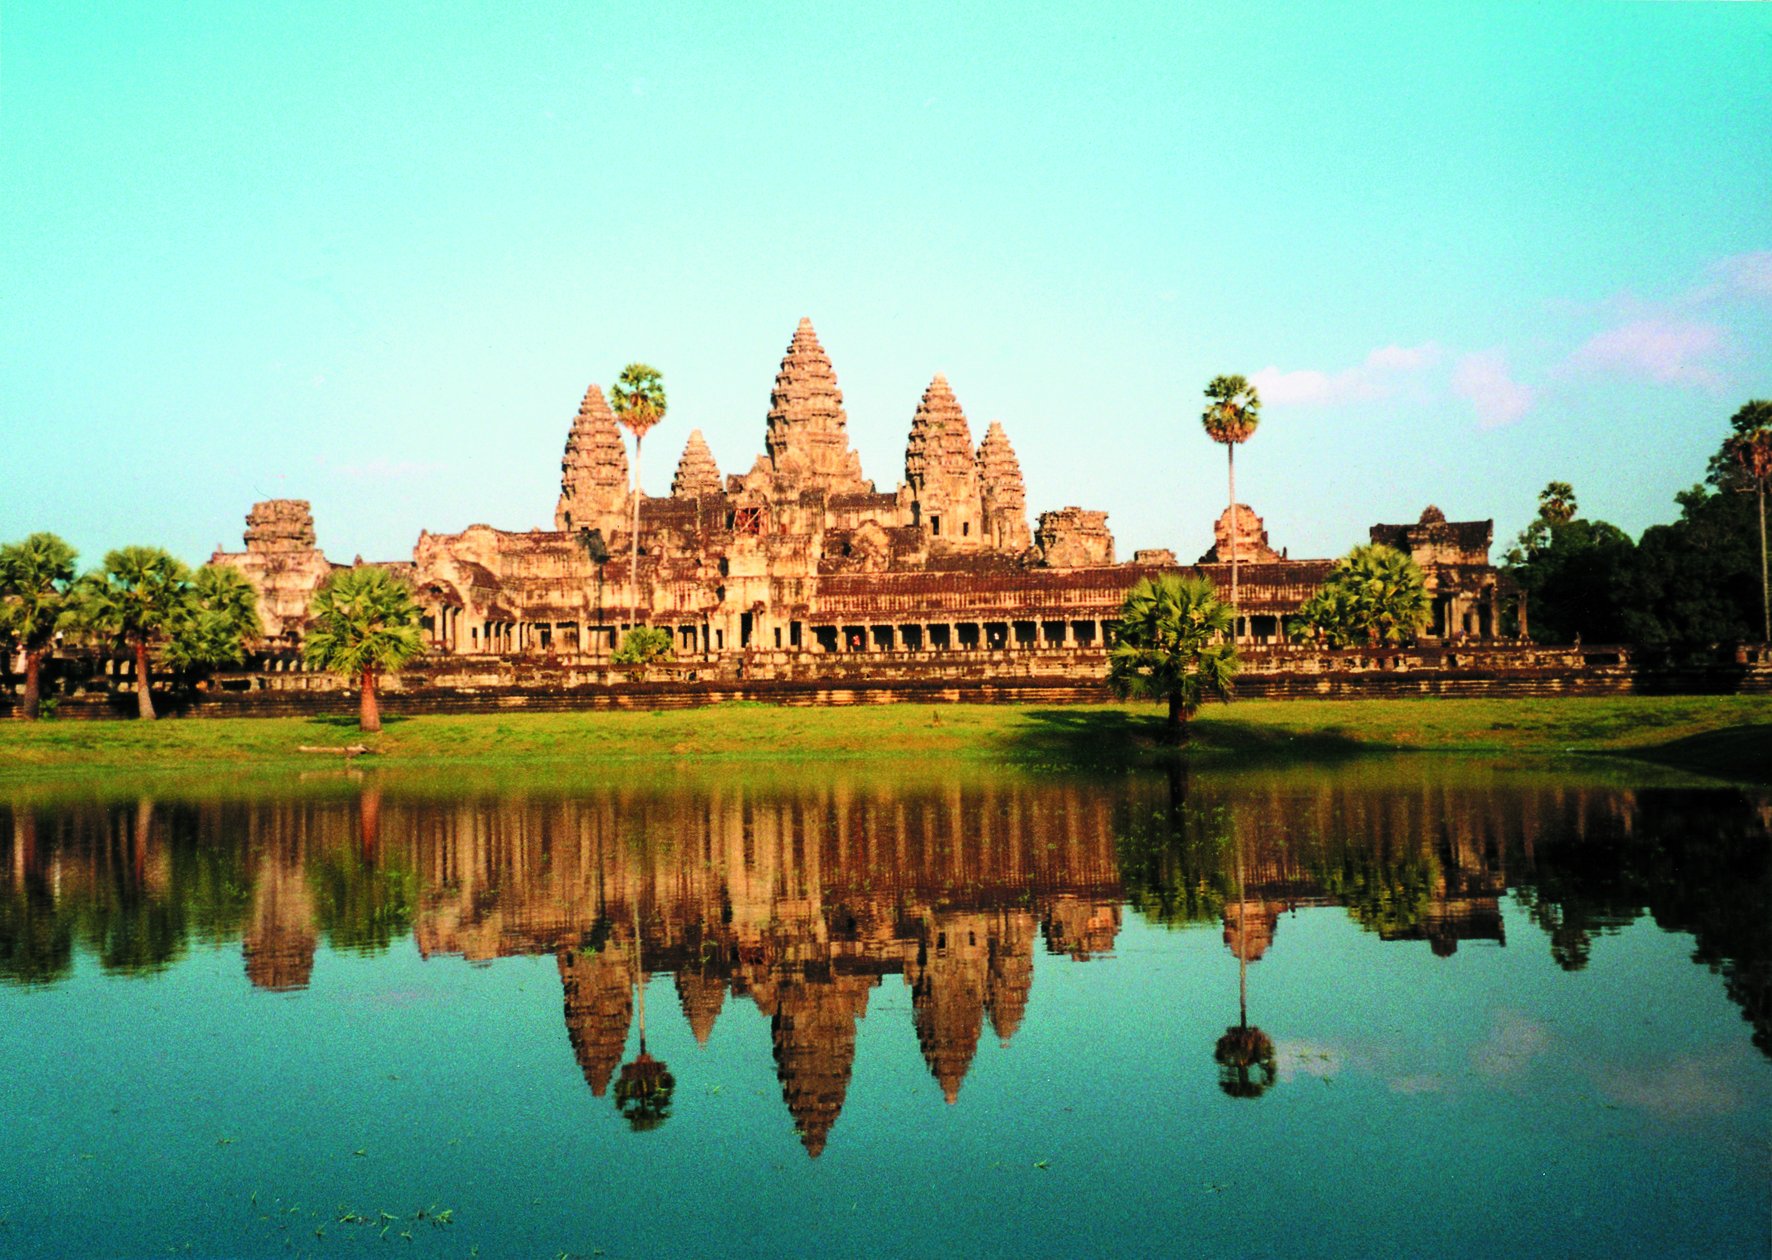 1.Angkor Wat, Cambodia